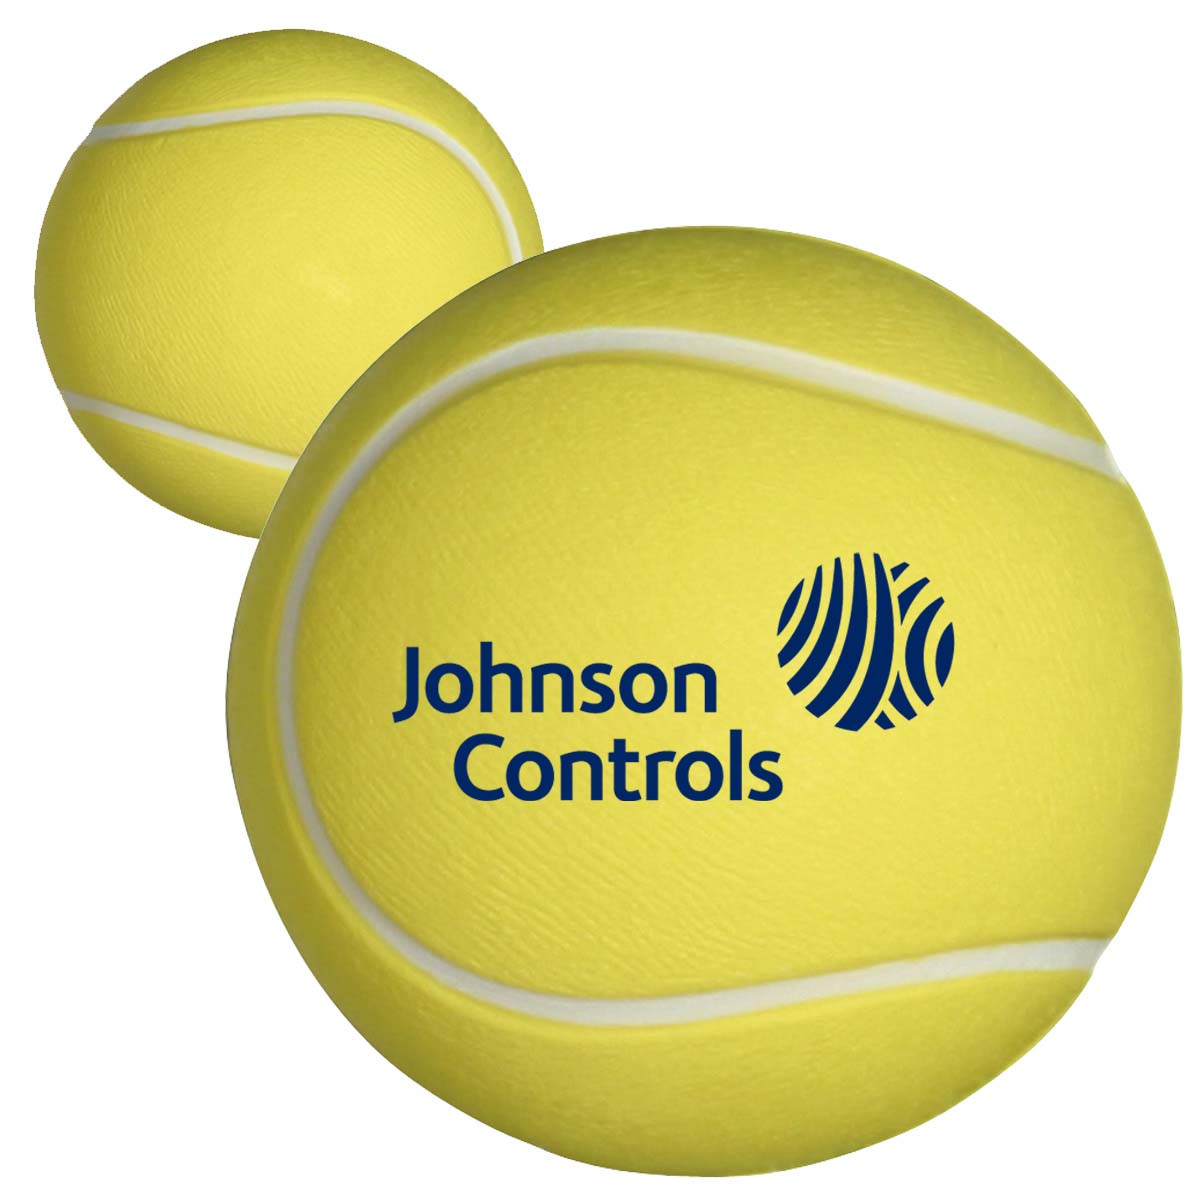 2.5" Stress Mini Tennis Balls